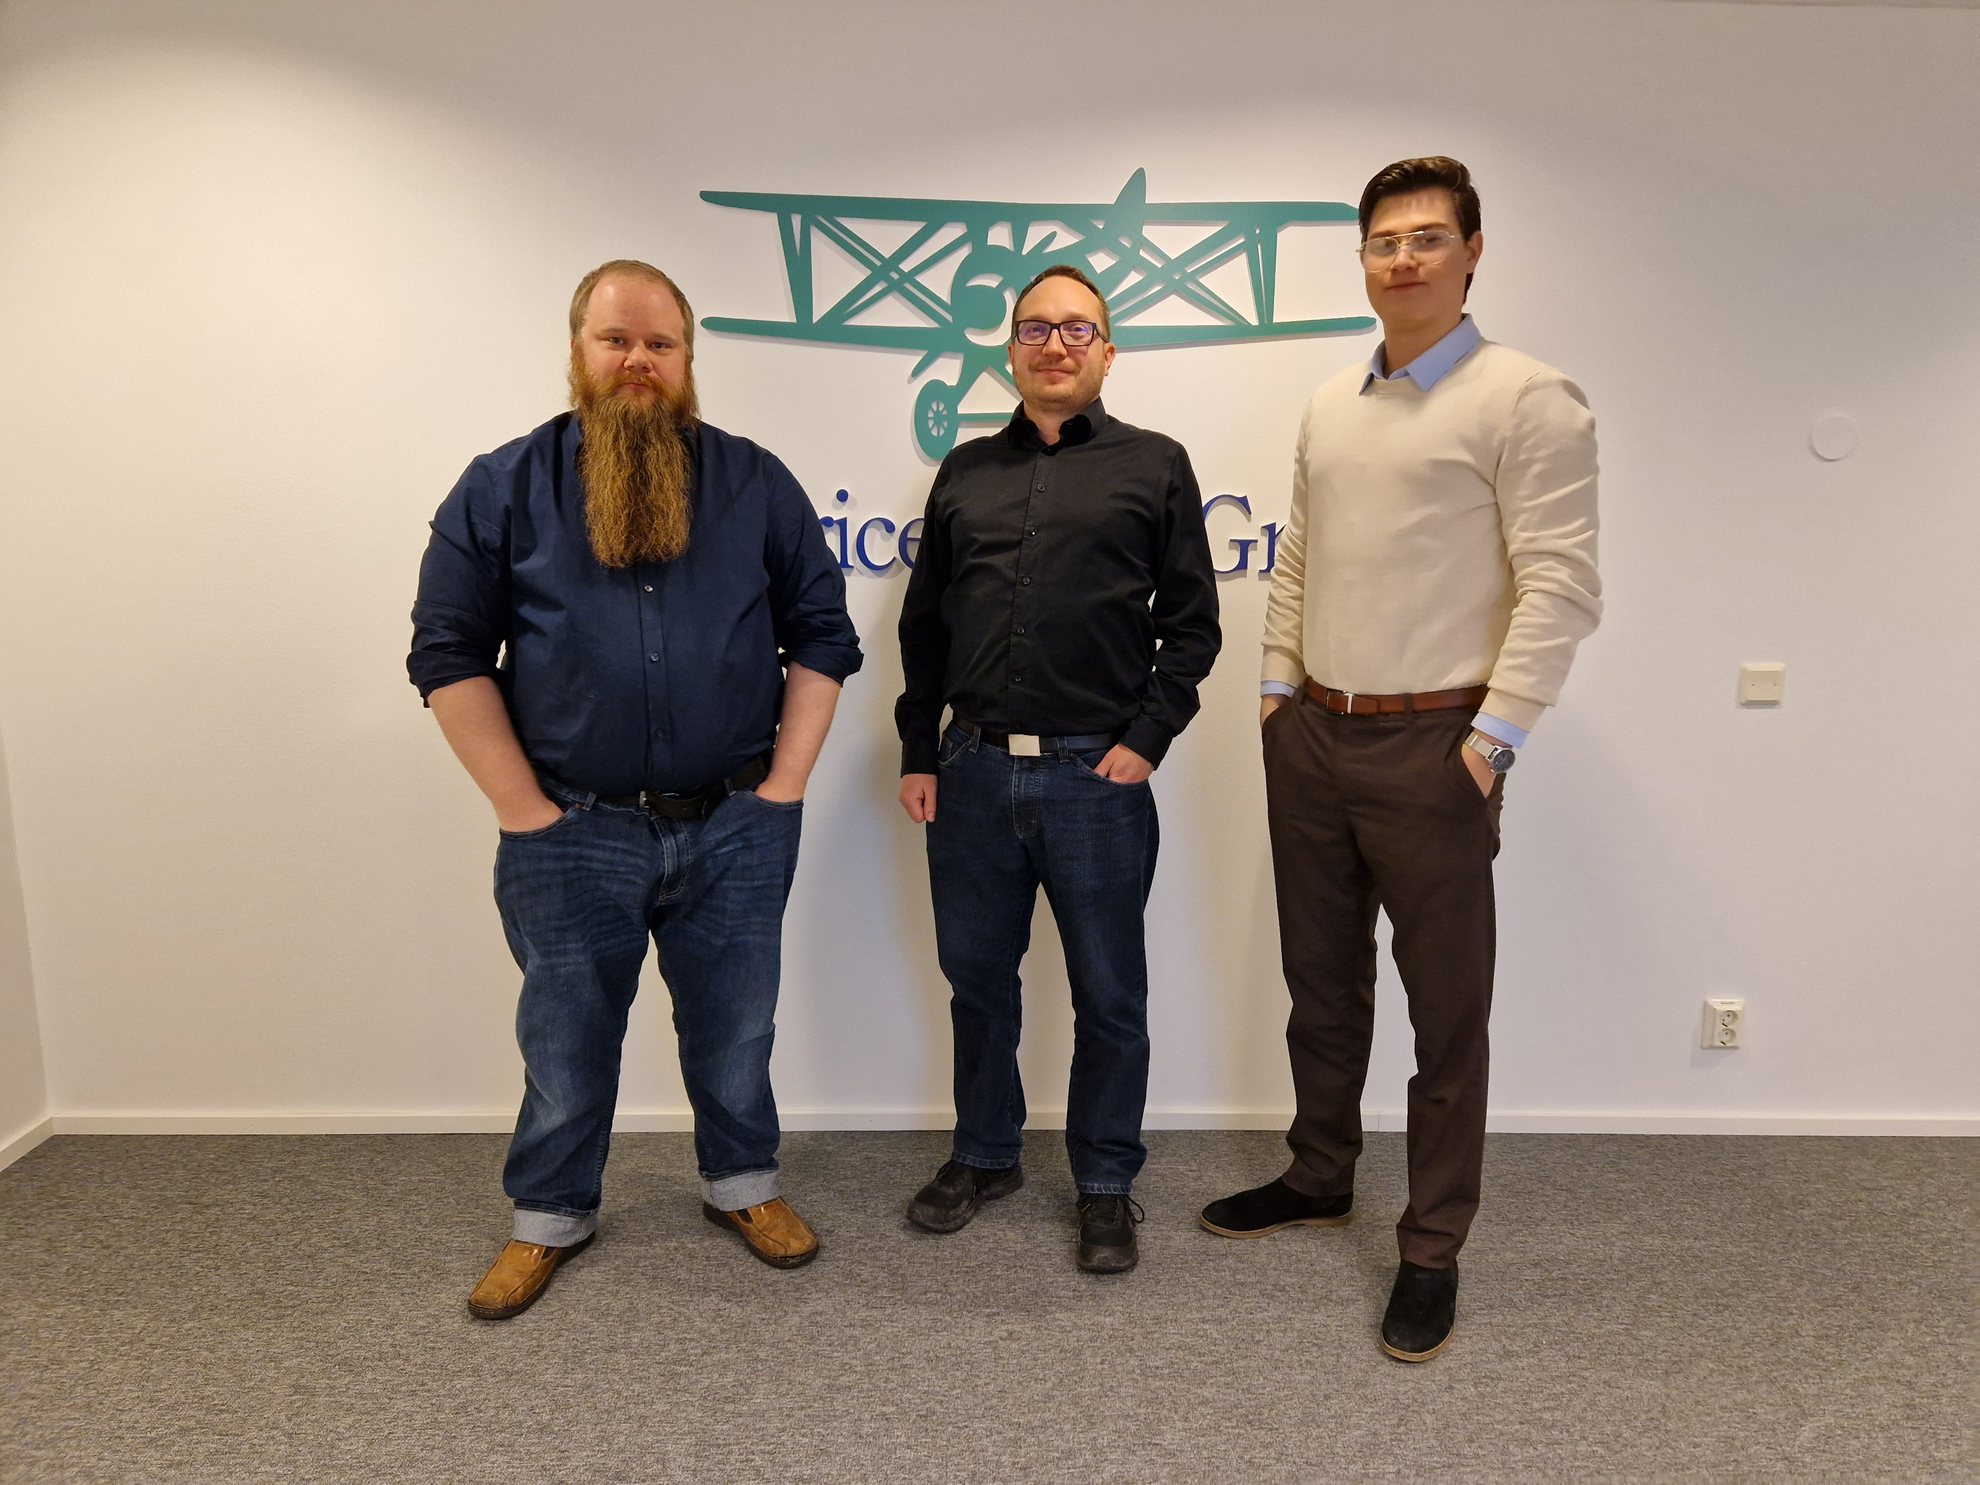 From the left: Lauri Metsola (Sales Coordinator), Eerik Wickström (Branch Manager), Joel Ehnqvist (Traffic Coordinator)